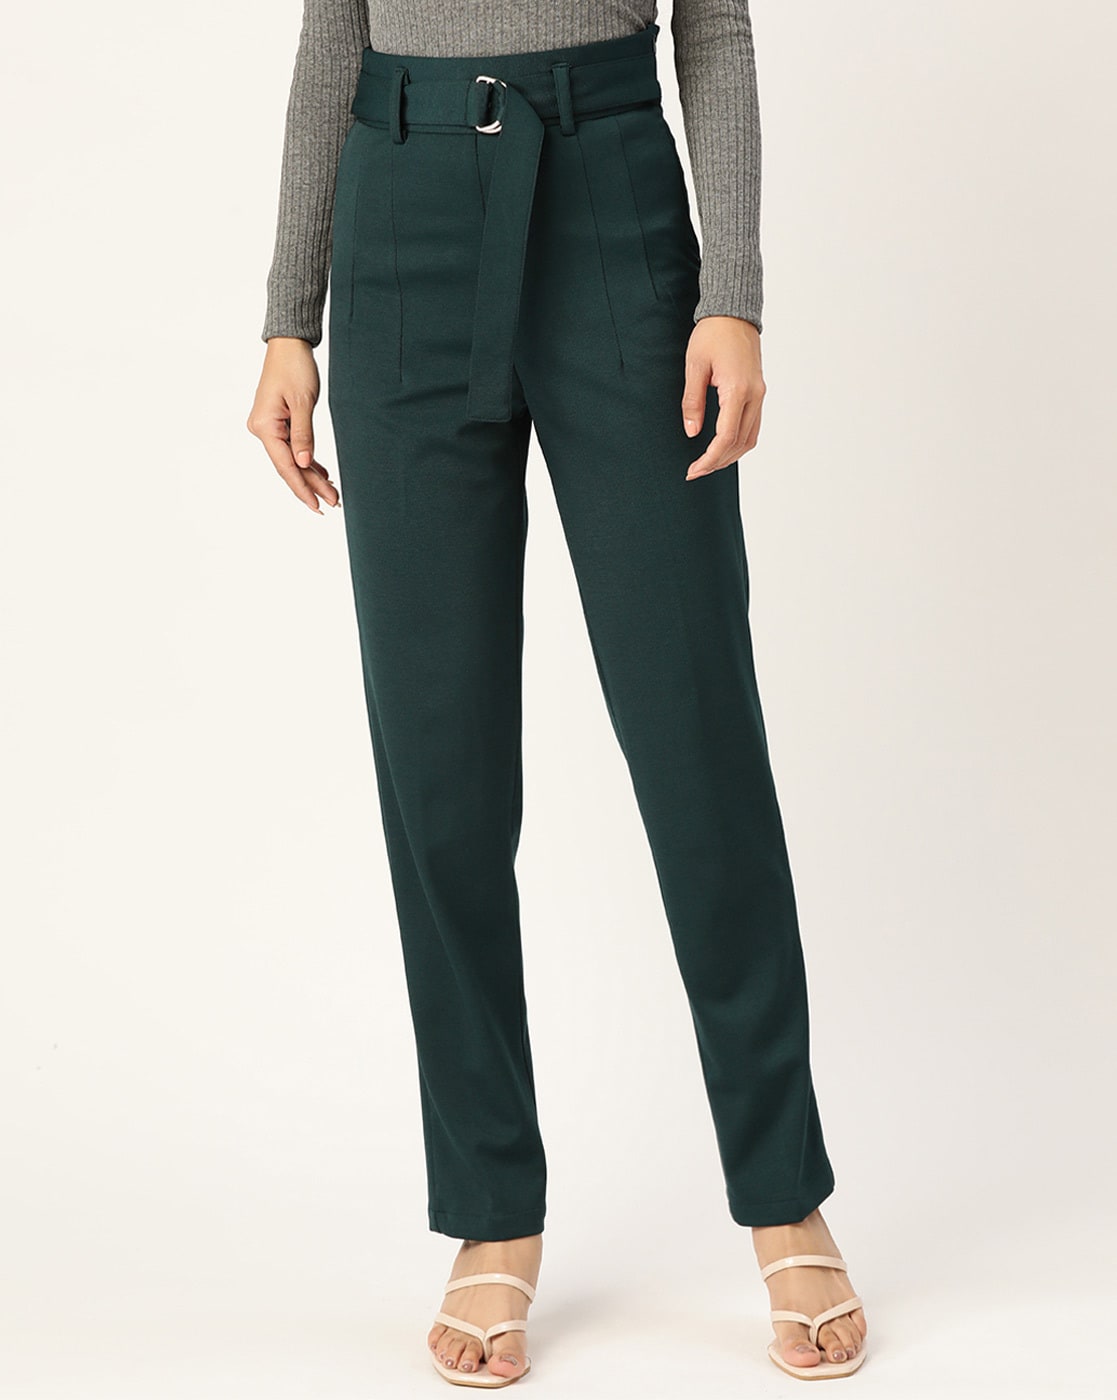 Buy Grey Trousers & Pants for Women by Zastraa Online